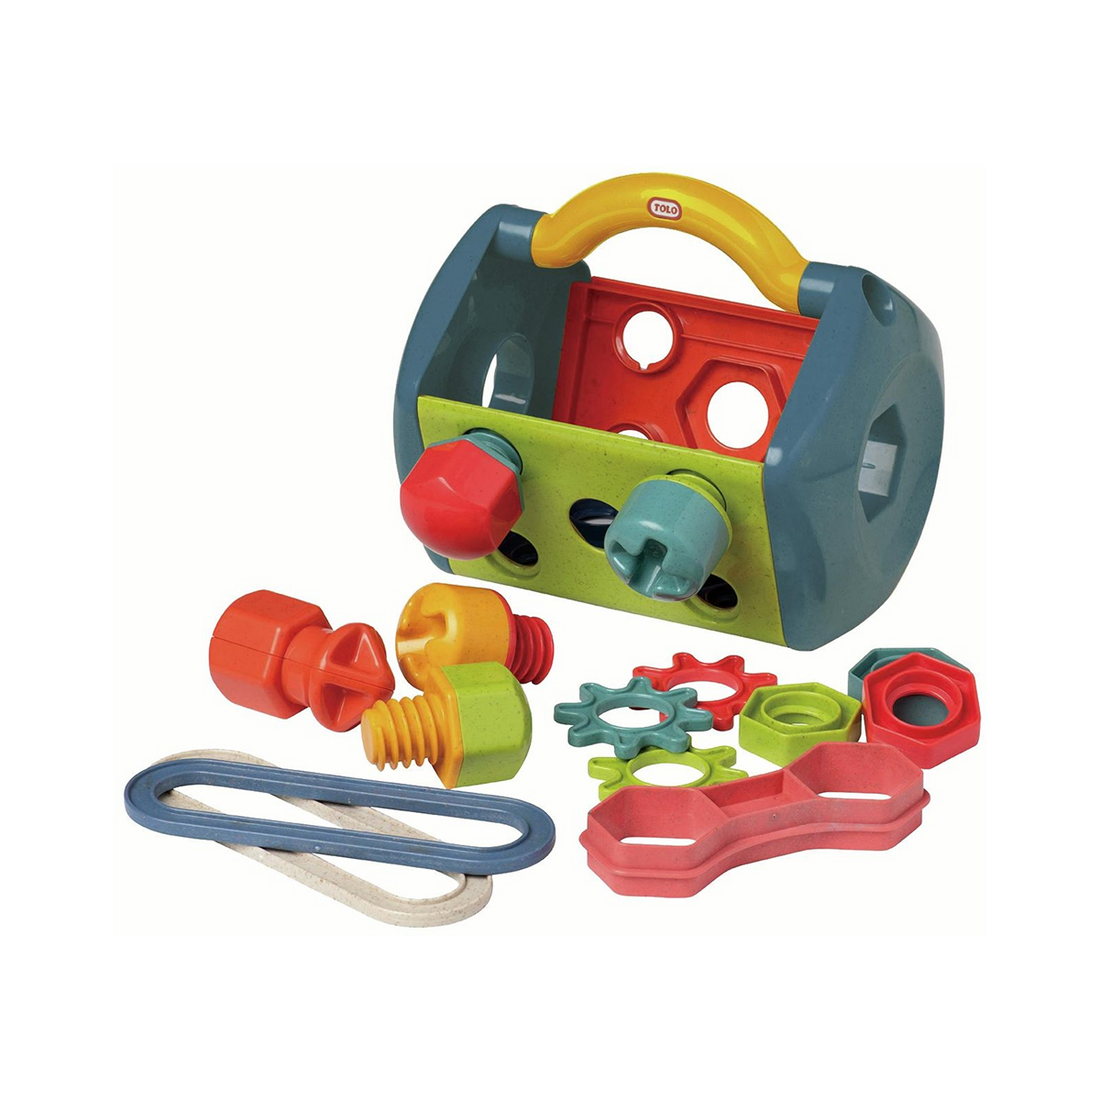 Trusa de scule + accesorii, set pentru Role Play - Tolo Bio